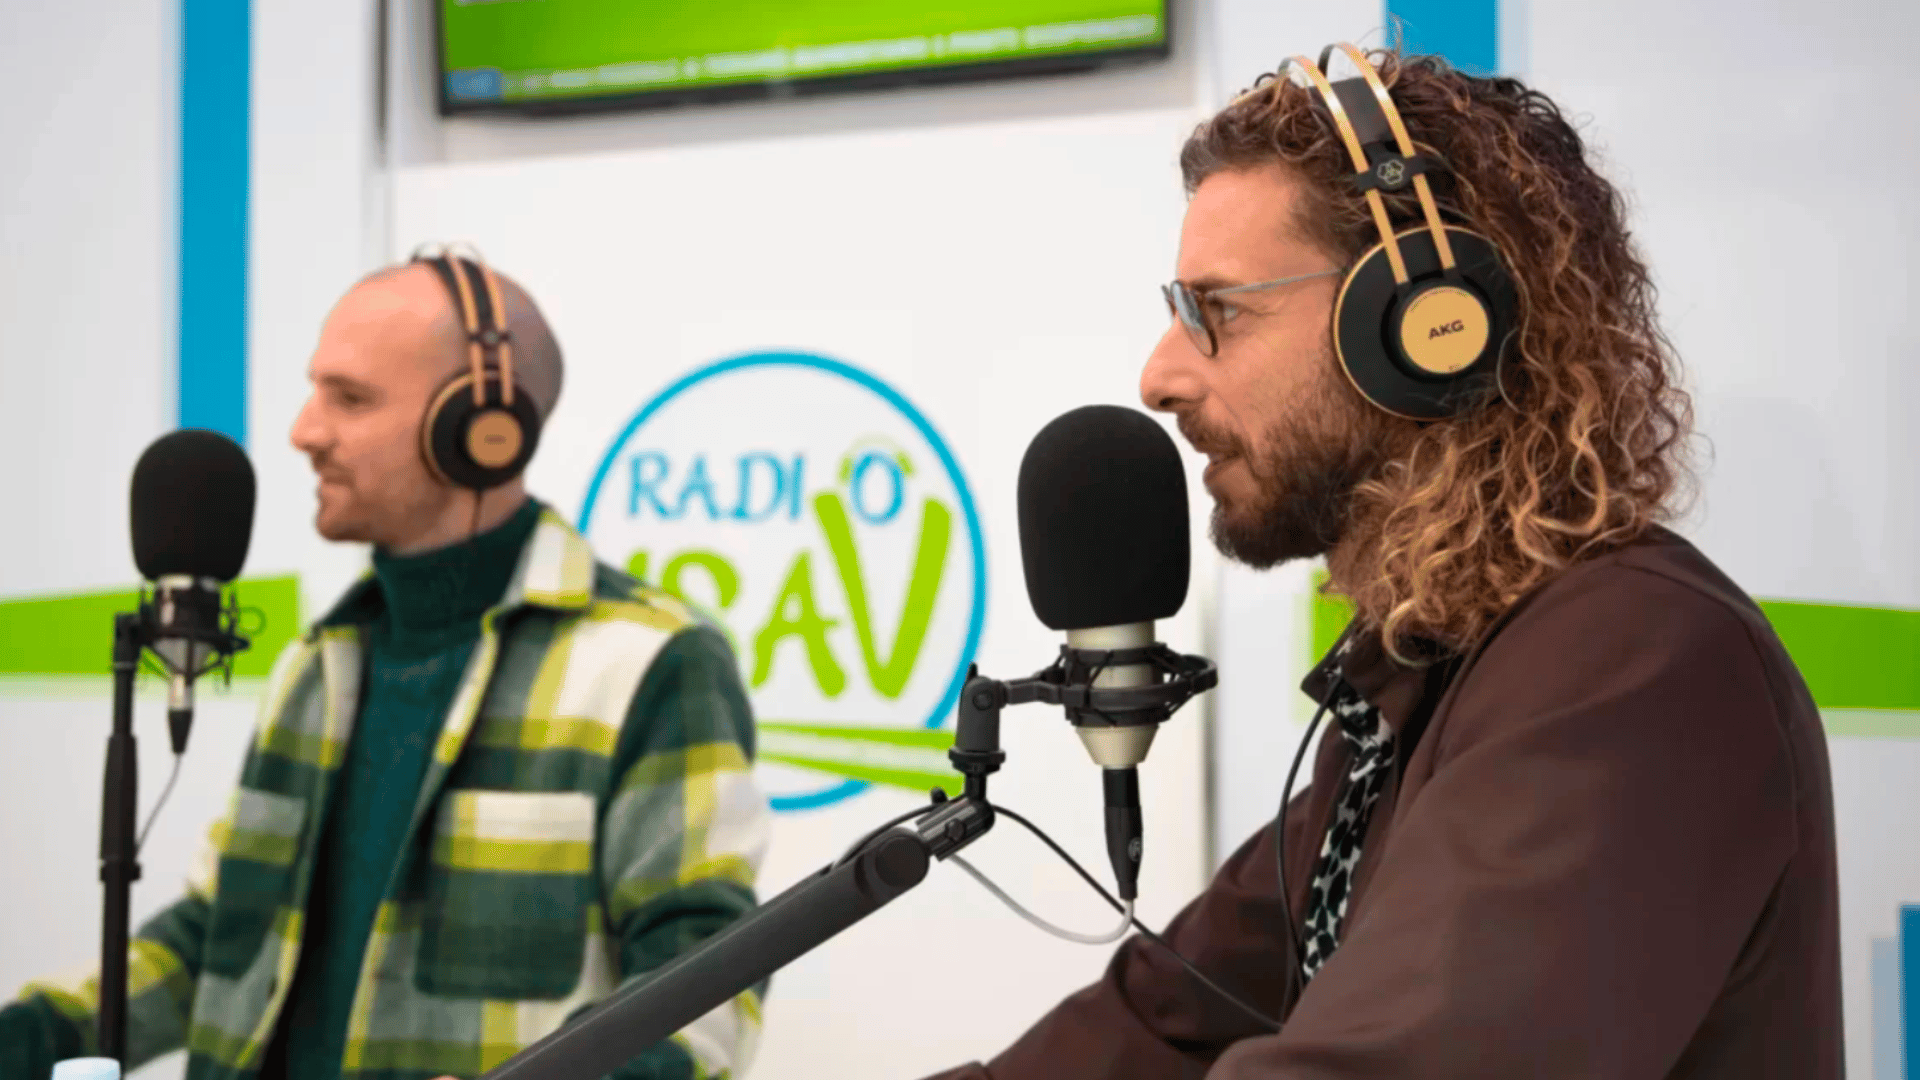 Radio ISAV Emittente radiofonica digitale a sostegno dei malati di Sla